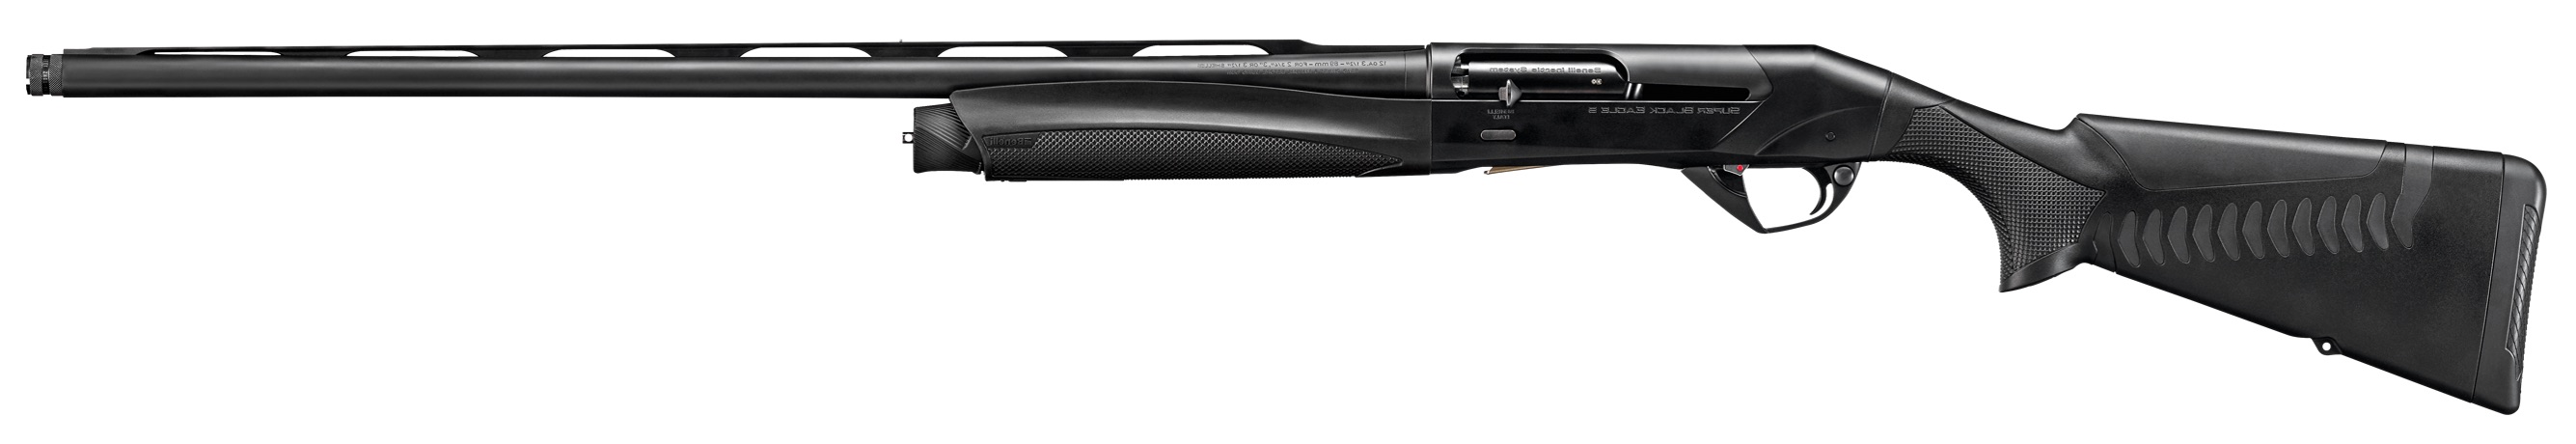 Гладкоствольное ружье BENELLI Moд. SUPER BLACK EAGLE 3 BLACK COMFORTECH-3 CRIO LH (полуавтоматическое)